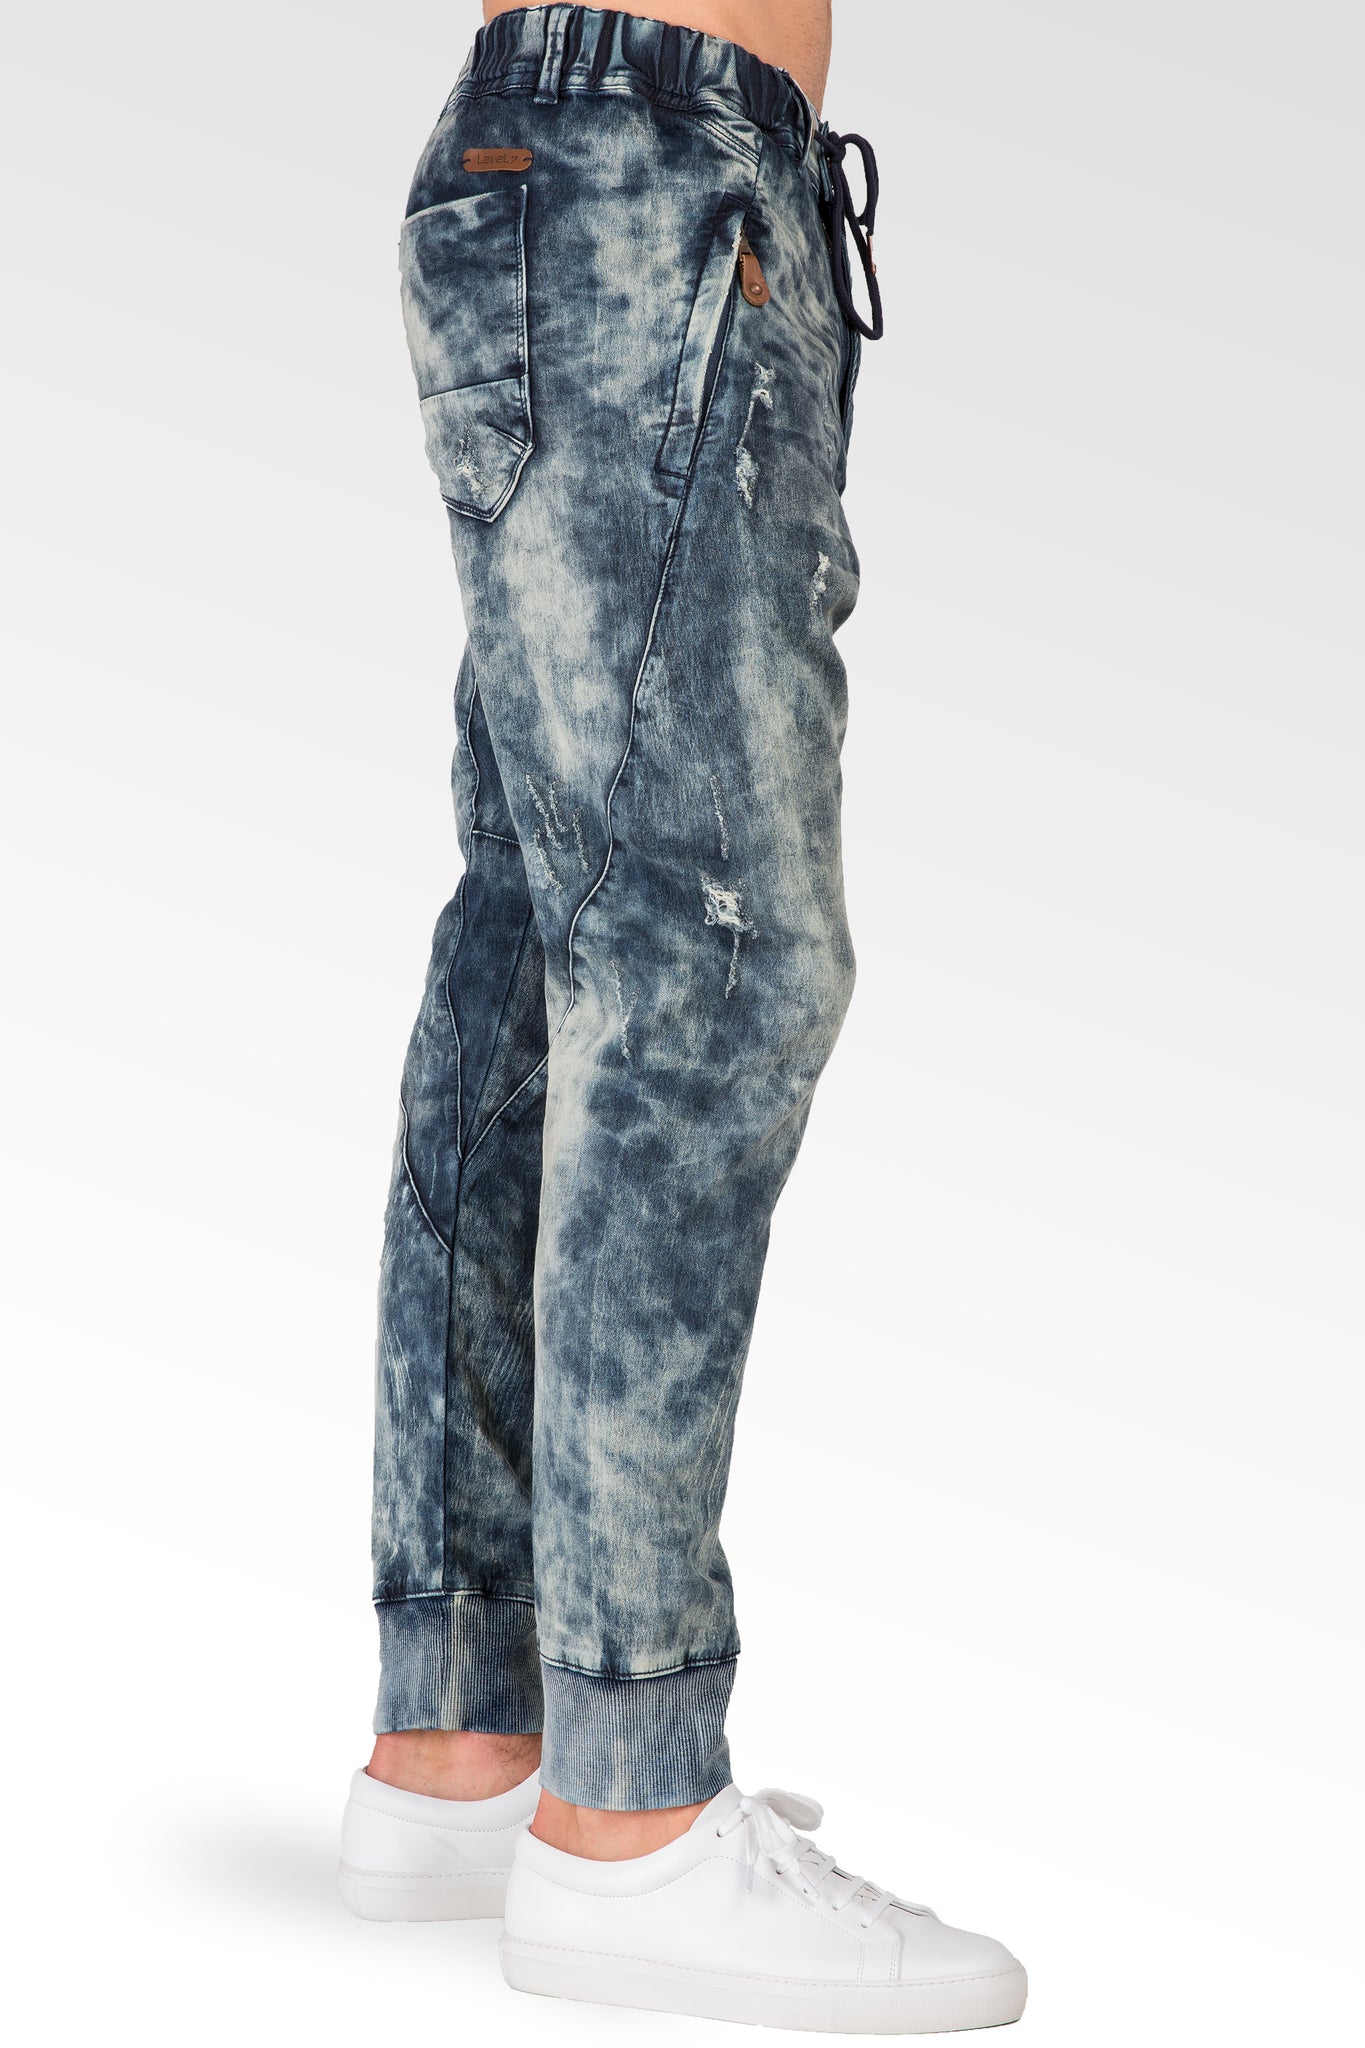 Premium Knit Denim Cloud Vintage Washed Drop Crotch Jogger Jeans Zip Pockets